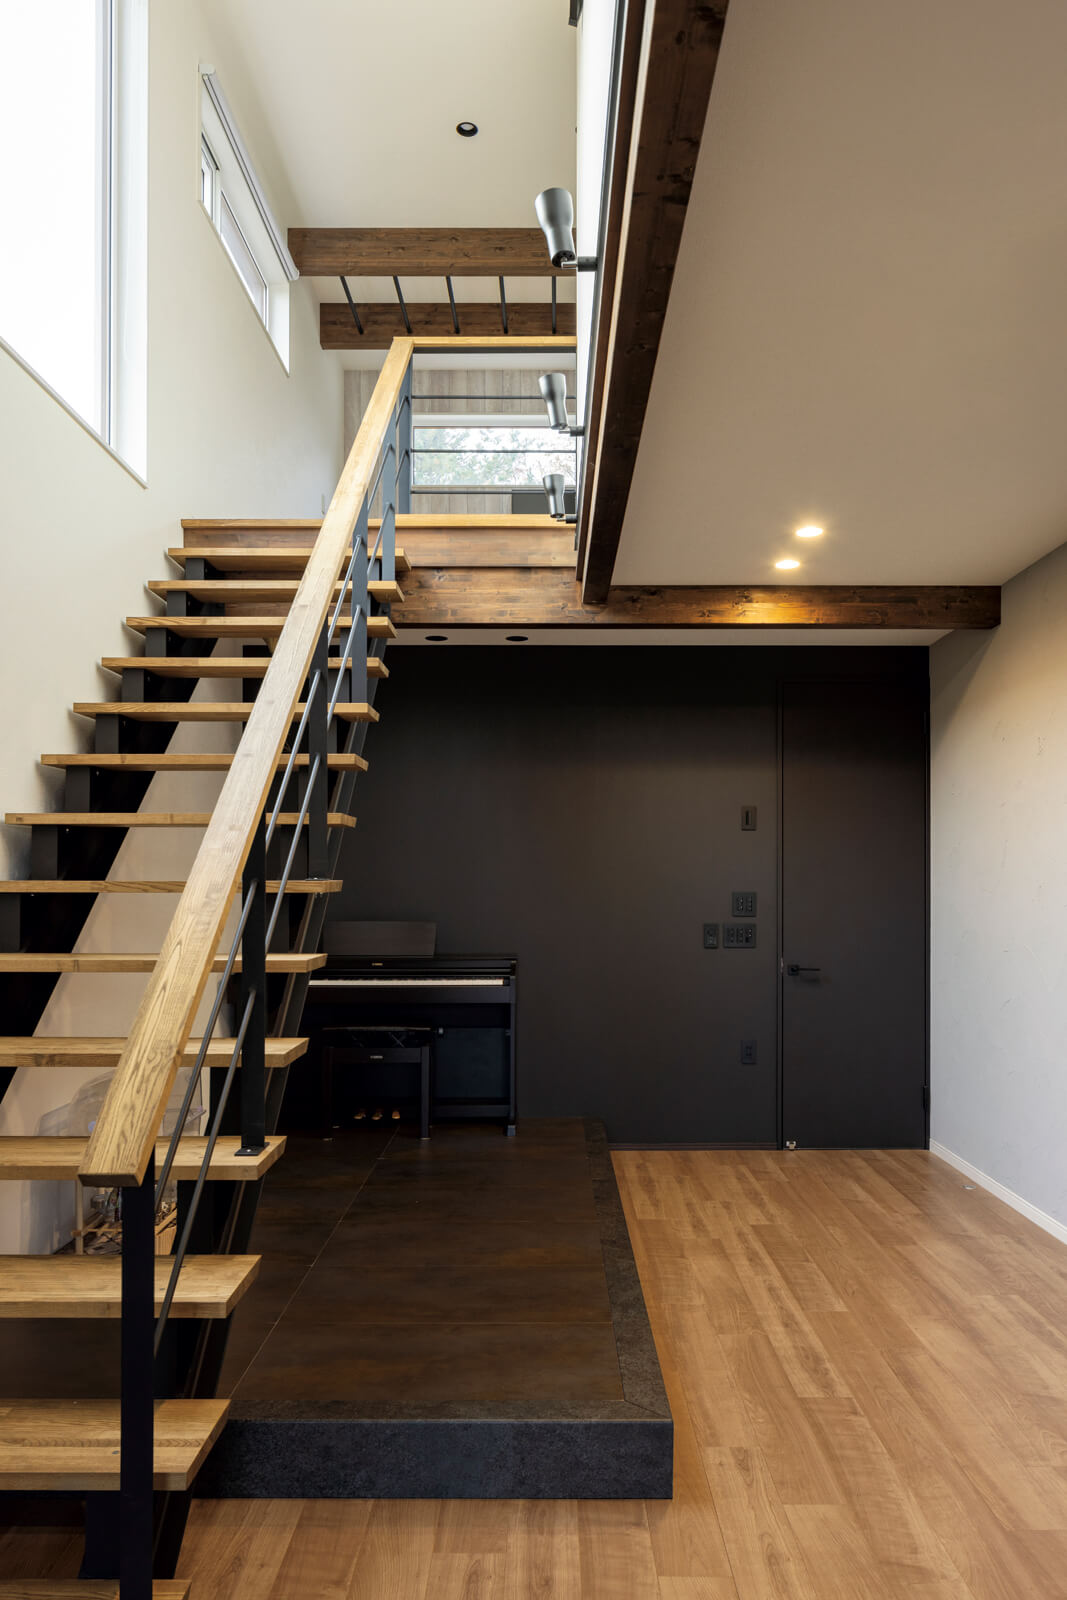 リビングのスケルトン階段にはアイアンを採用。階段下には、アイアンの質感、テイストに合わせた黒とさび色を効かせた小上がりを設け、開放的なLDK空間のアクセントに